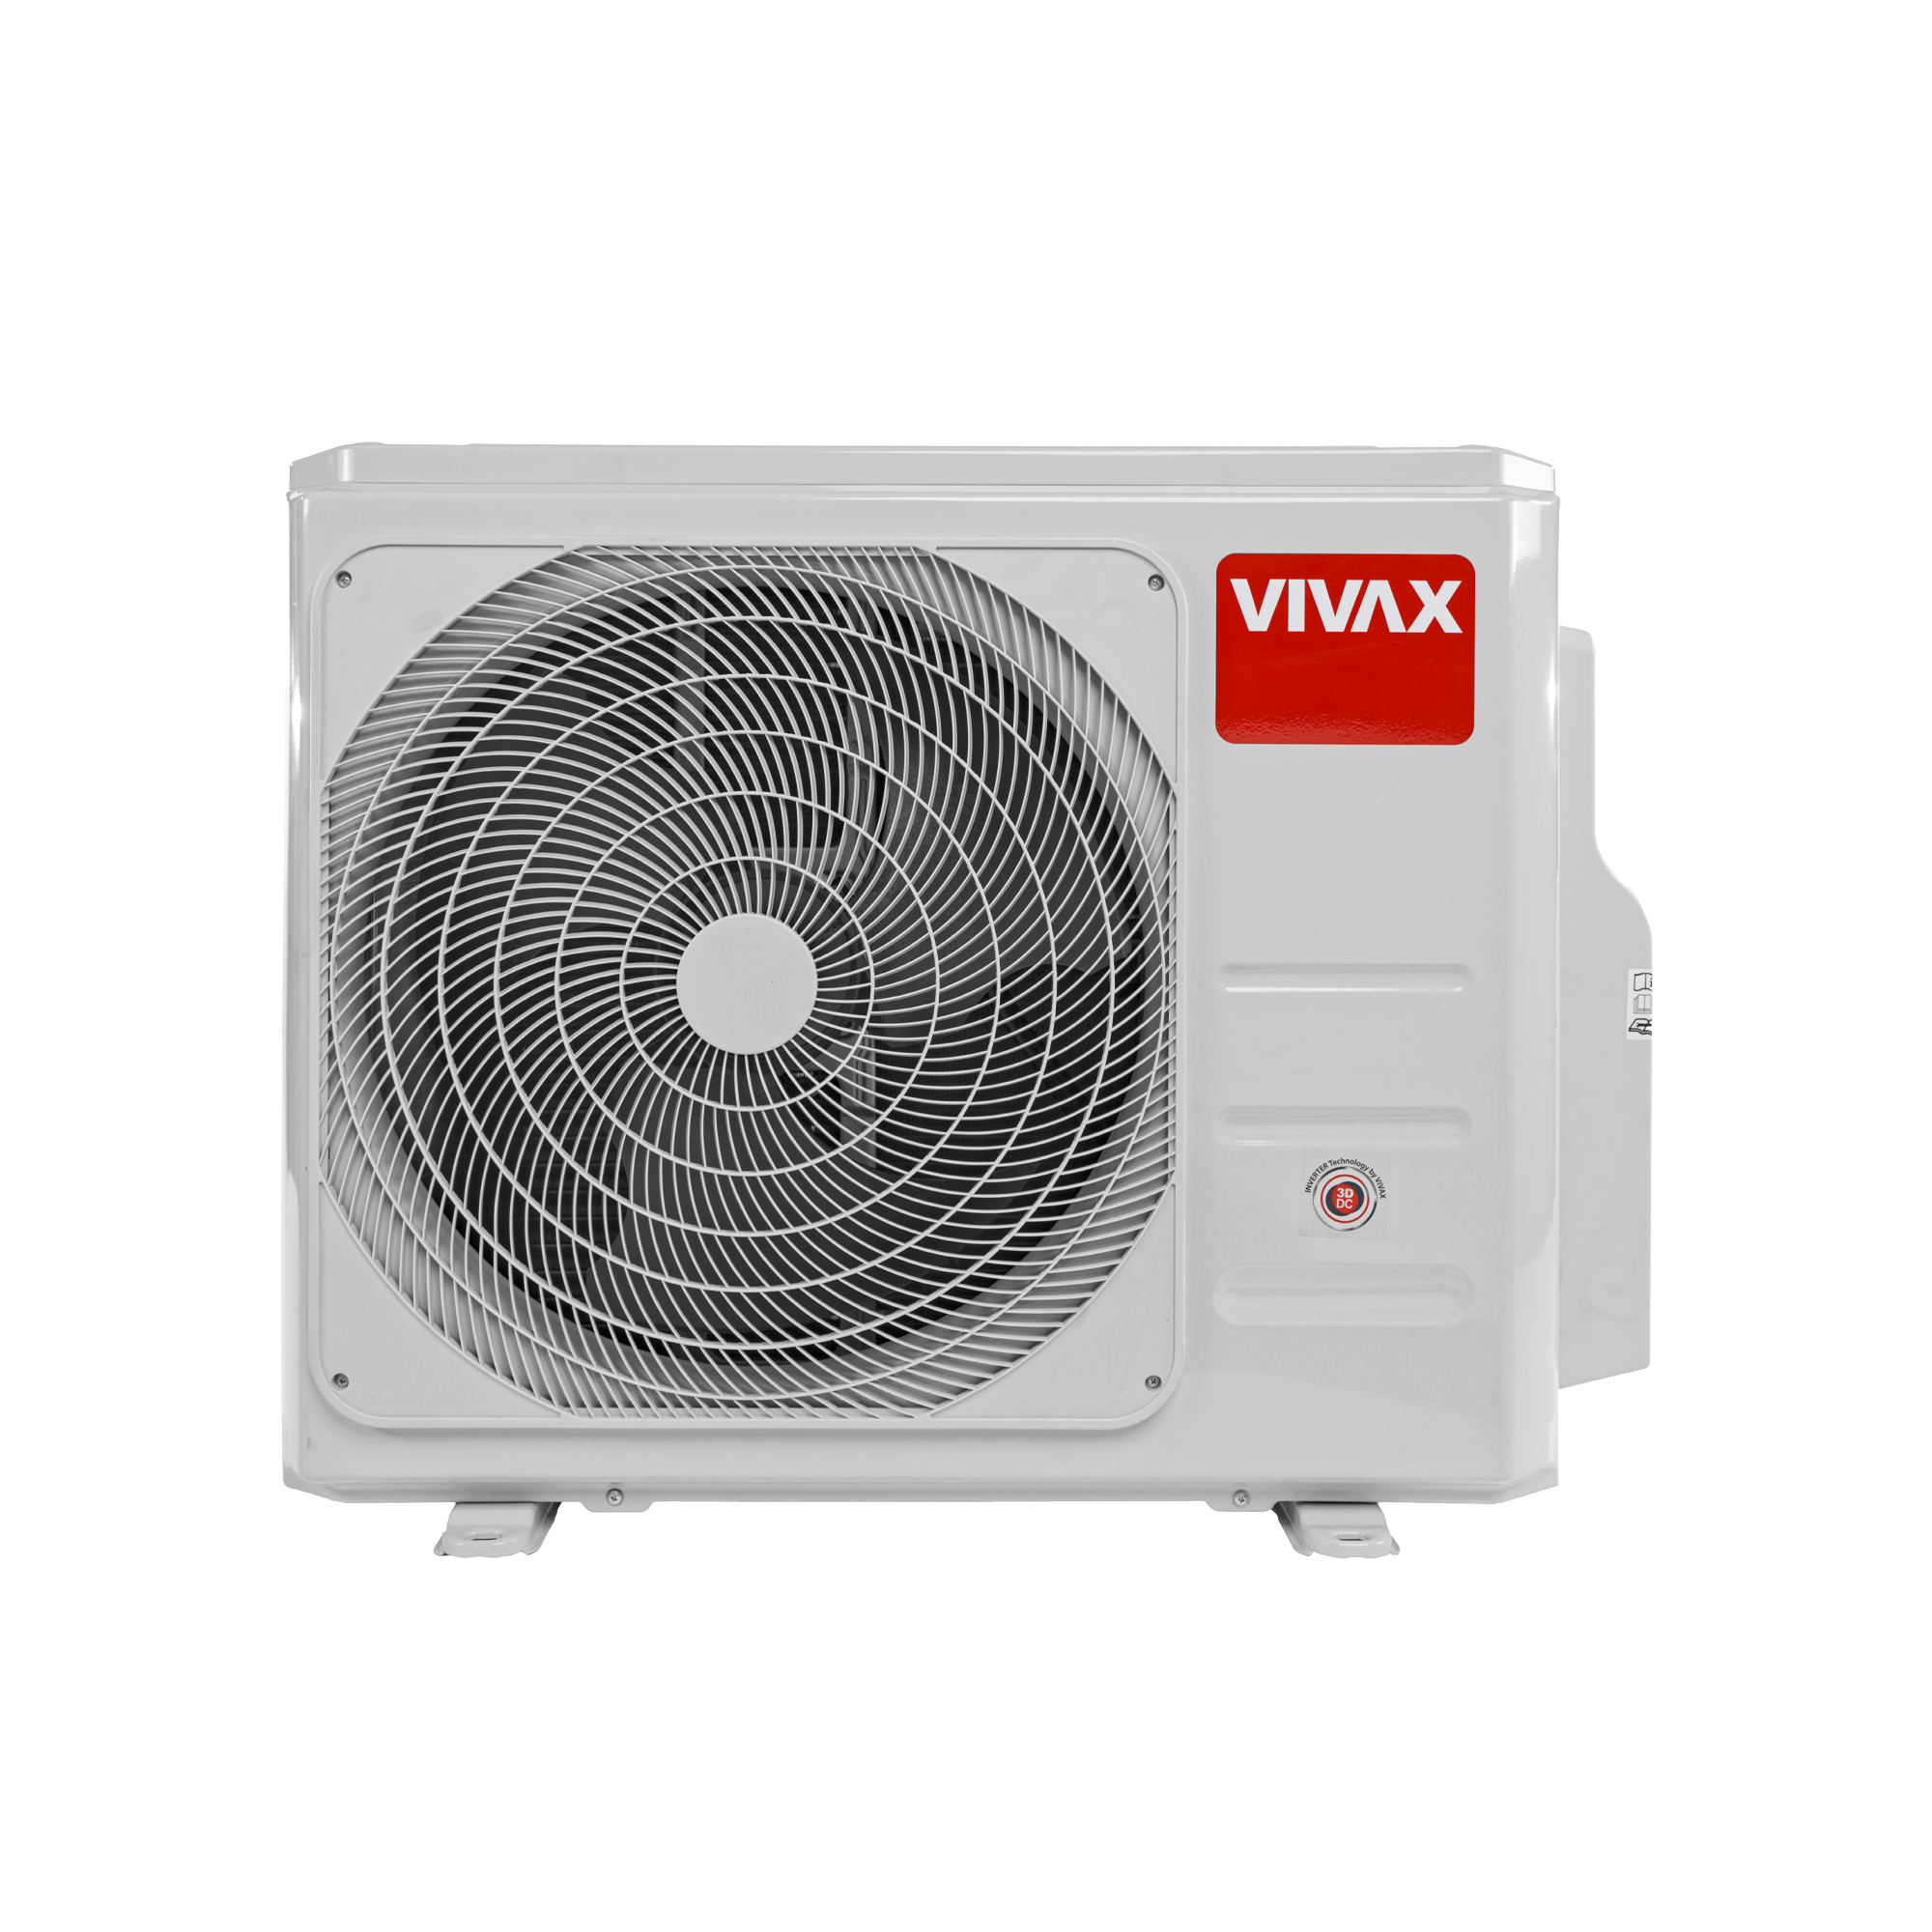 VIVAX outdoor air conditioner ACP-21COFM60AERIs, 6.45 kW, ACP-21COFM60AERIs, 6.45 kW